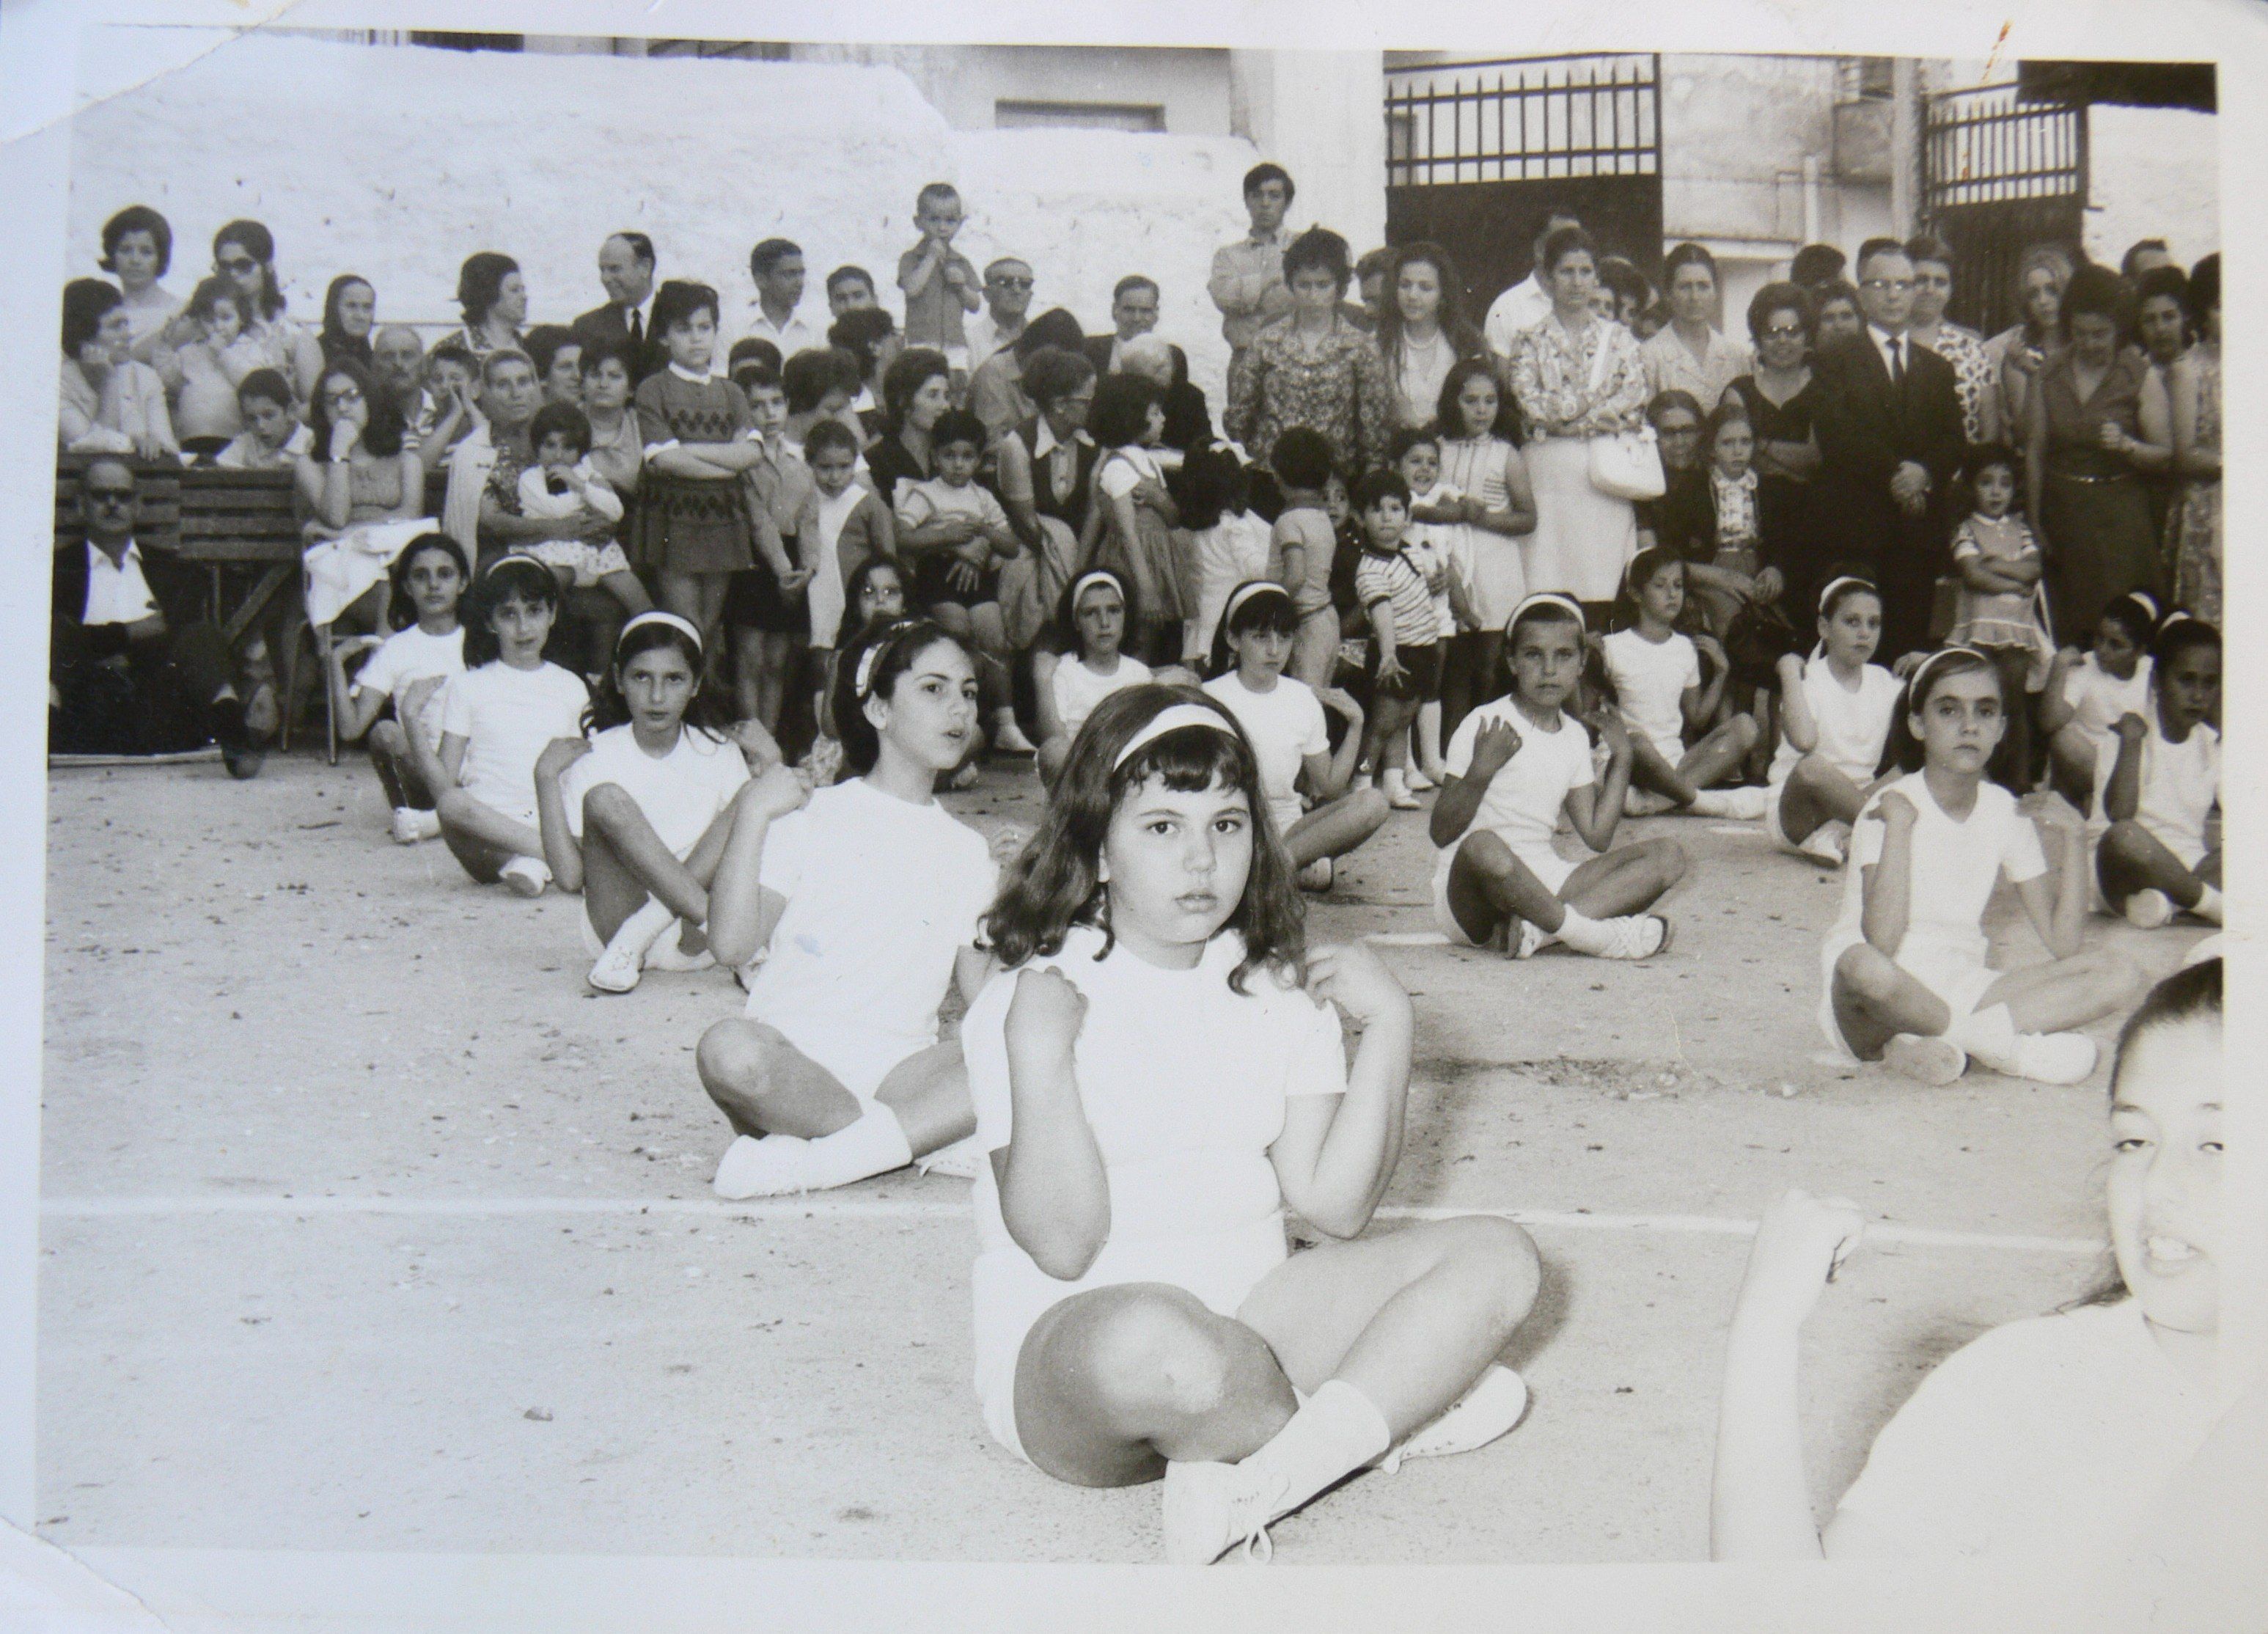 1968. Γυμναστικές επιδείξεις σε δημοτικό σχολείο της Καλλιθέας. Οι γονείς φορούσαν τα καλά τους για να καμαρώσουν τα “βλαστάρια” τους